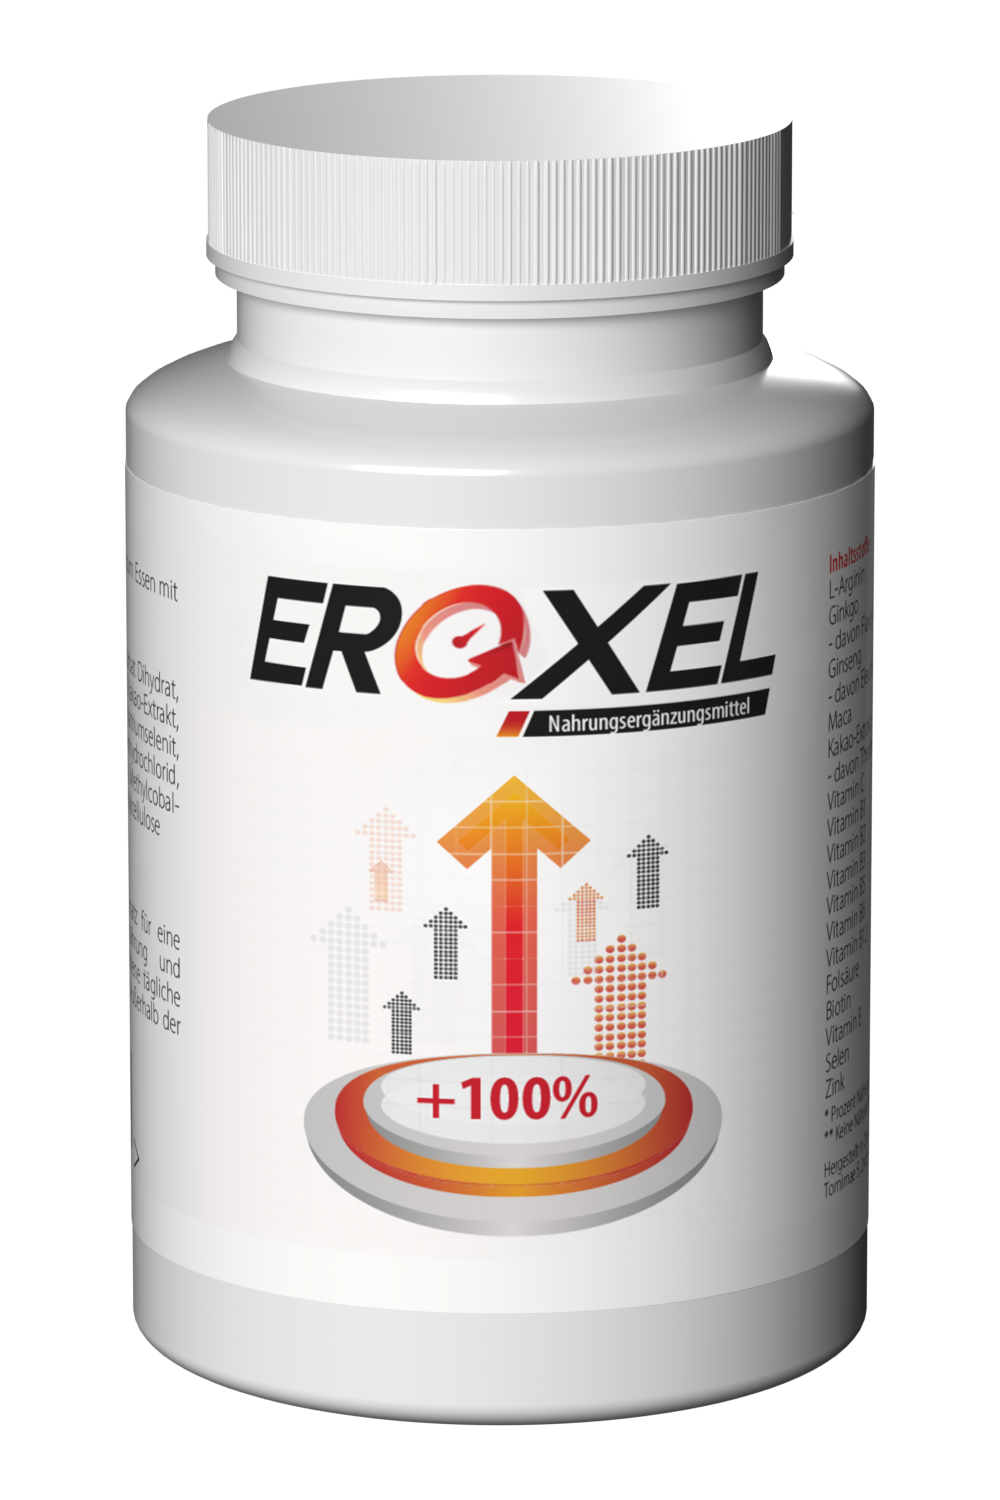 EroxelForte1 Descripción general